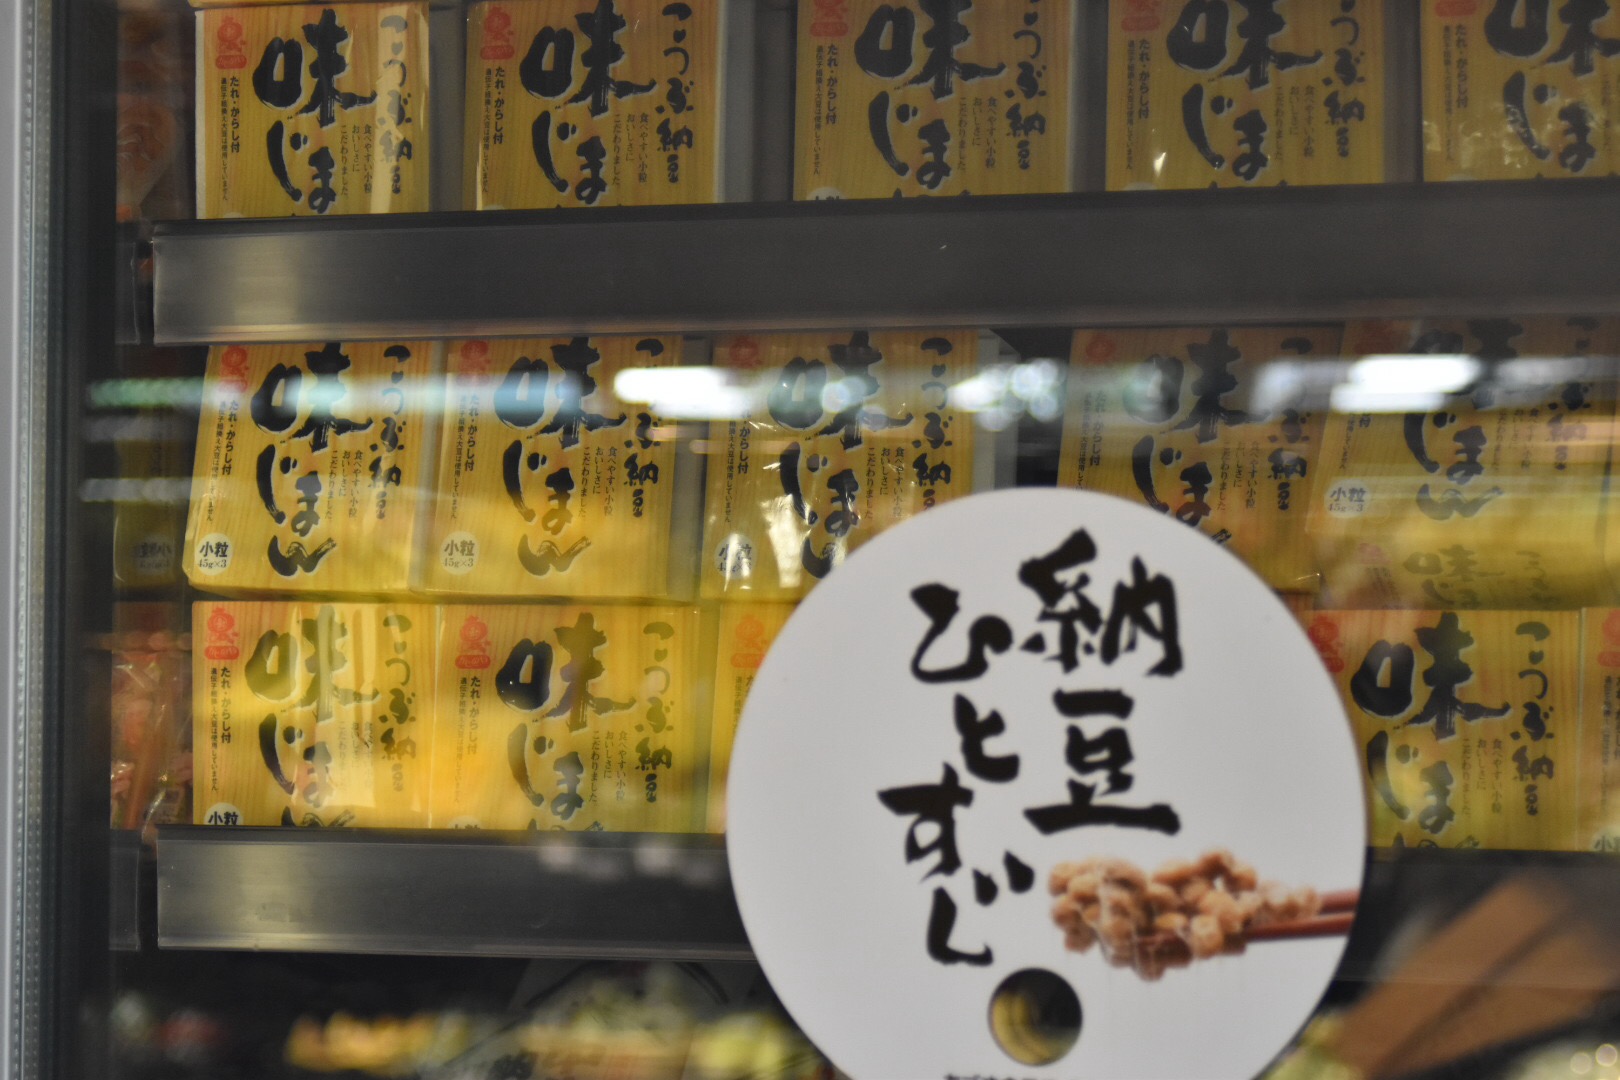 納豆が冷凍コーナーに！マレーシアの日本食スーパーで感じたカルチャーショック4つ【マレーシア】